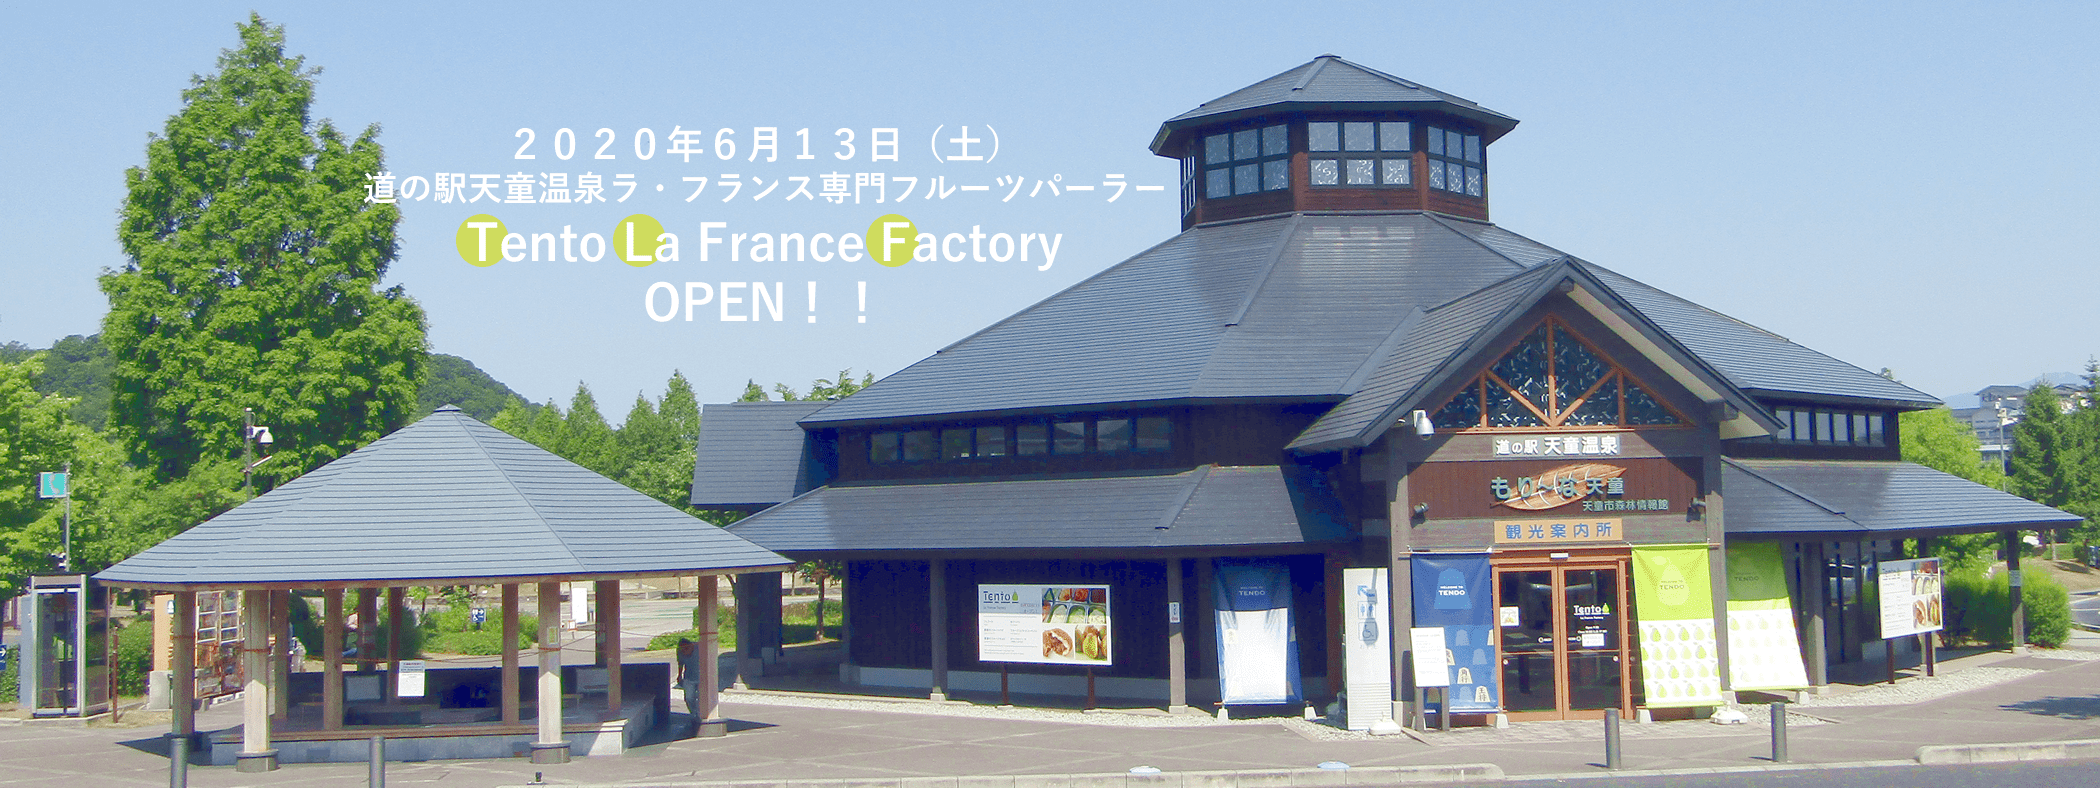 Tent La France Factory